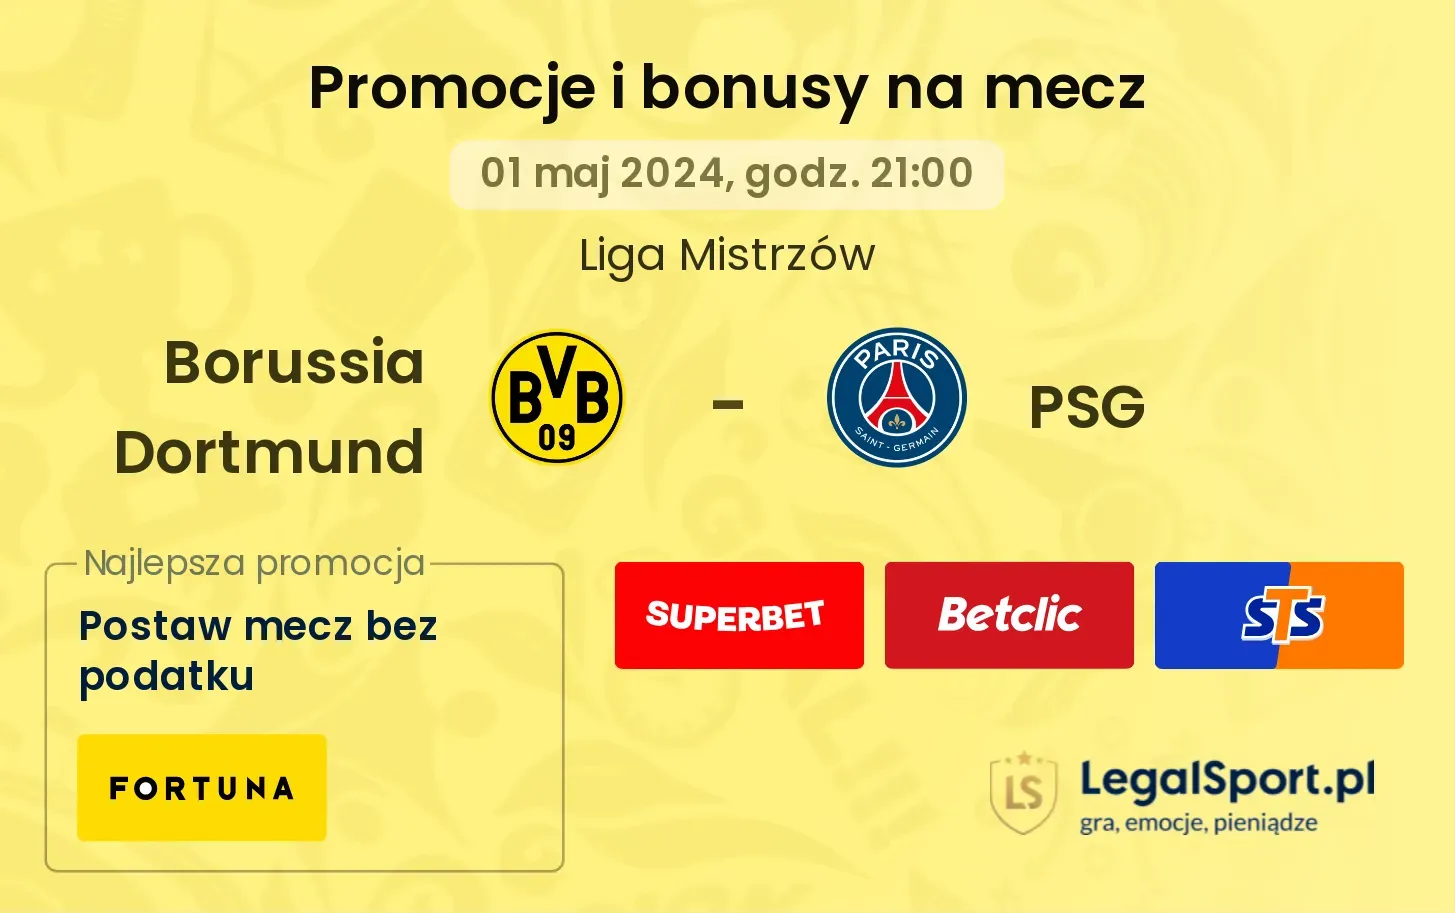 Borussia Dortmund - PSG promocje bonusy na mecz